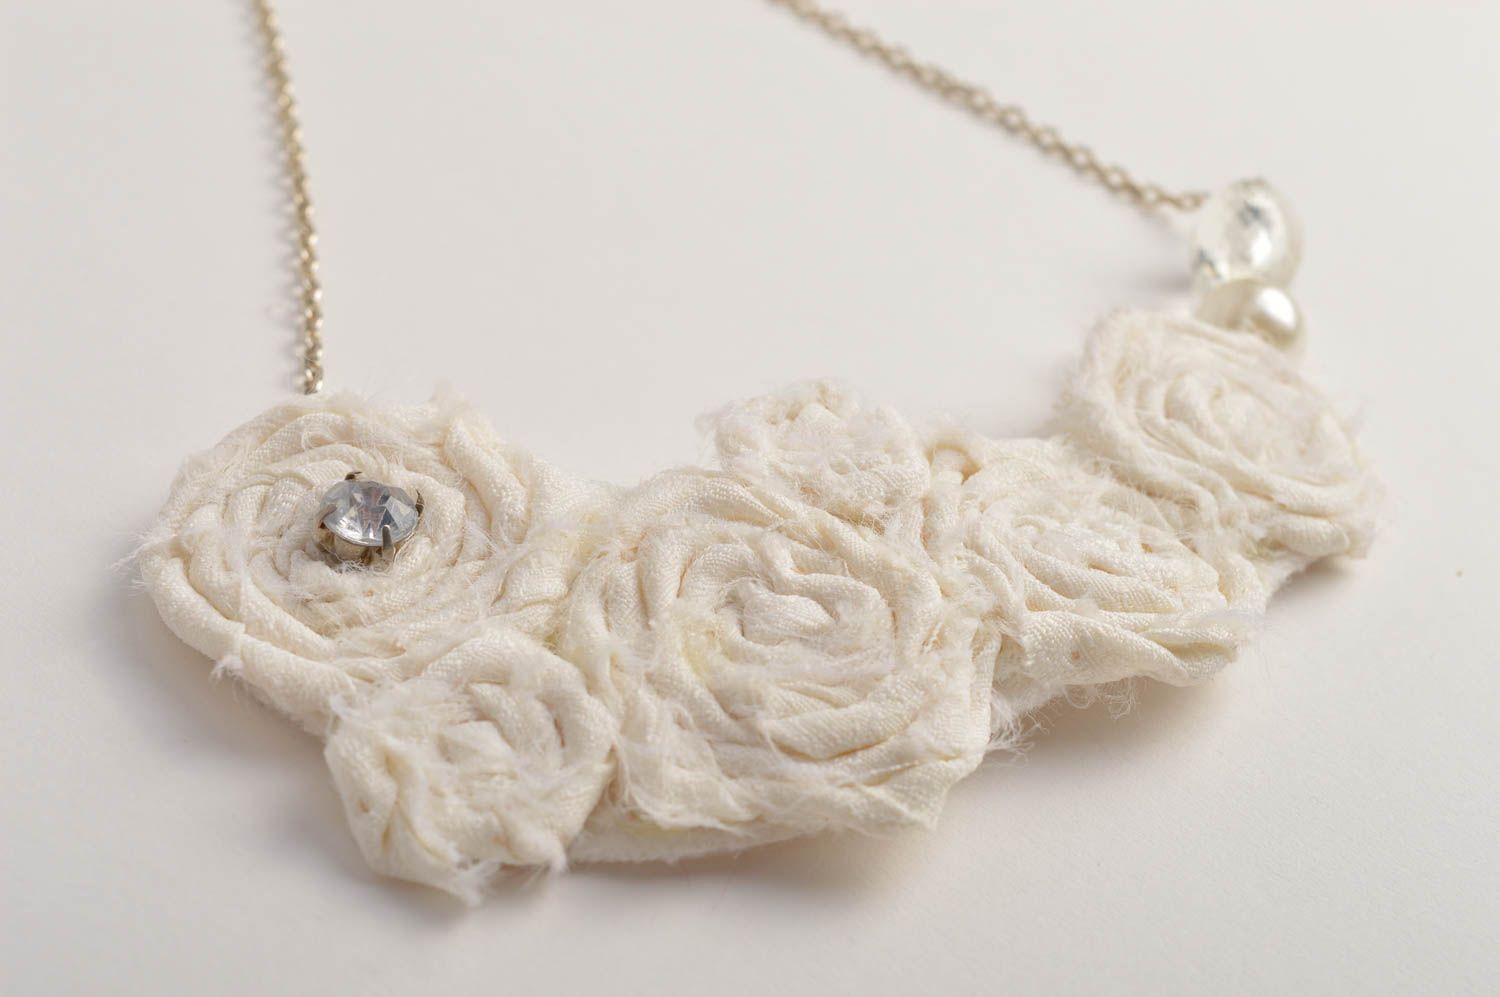 Handmade beaded necklace stylish elegant necklace fabric festive jewelry photo 3